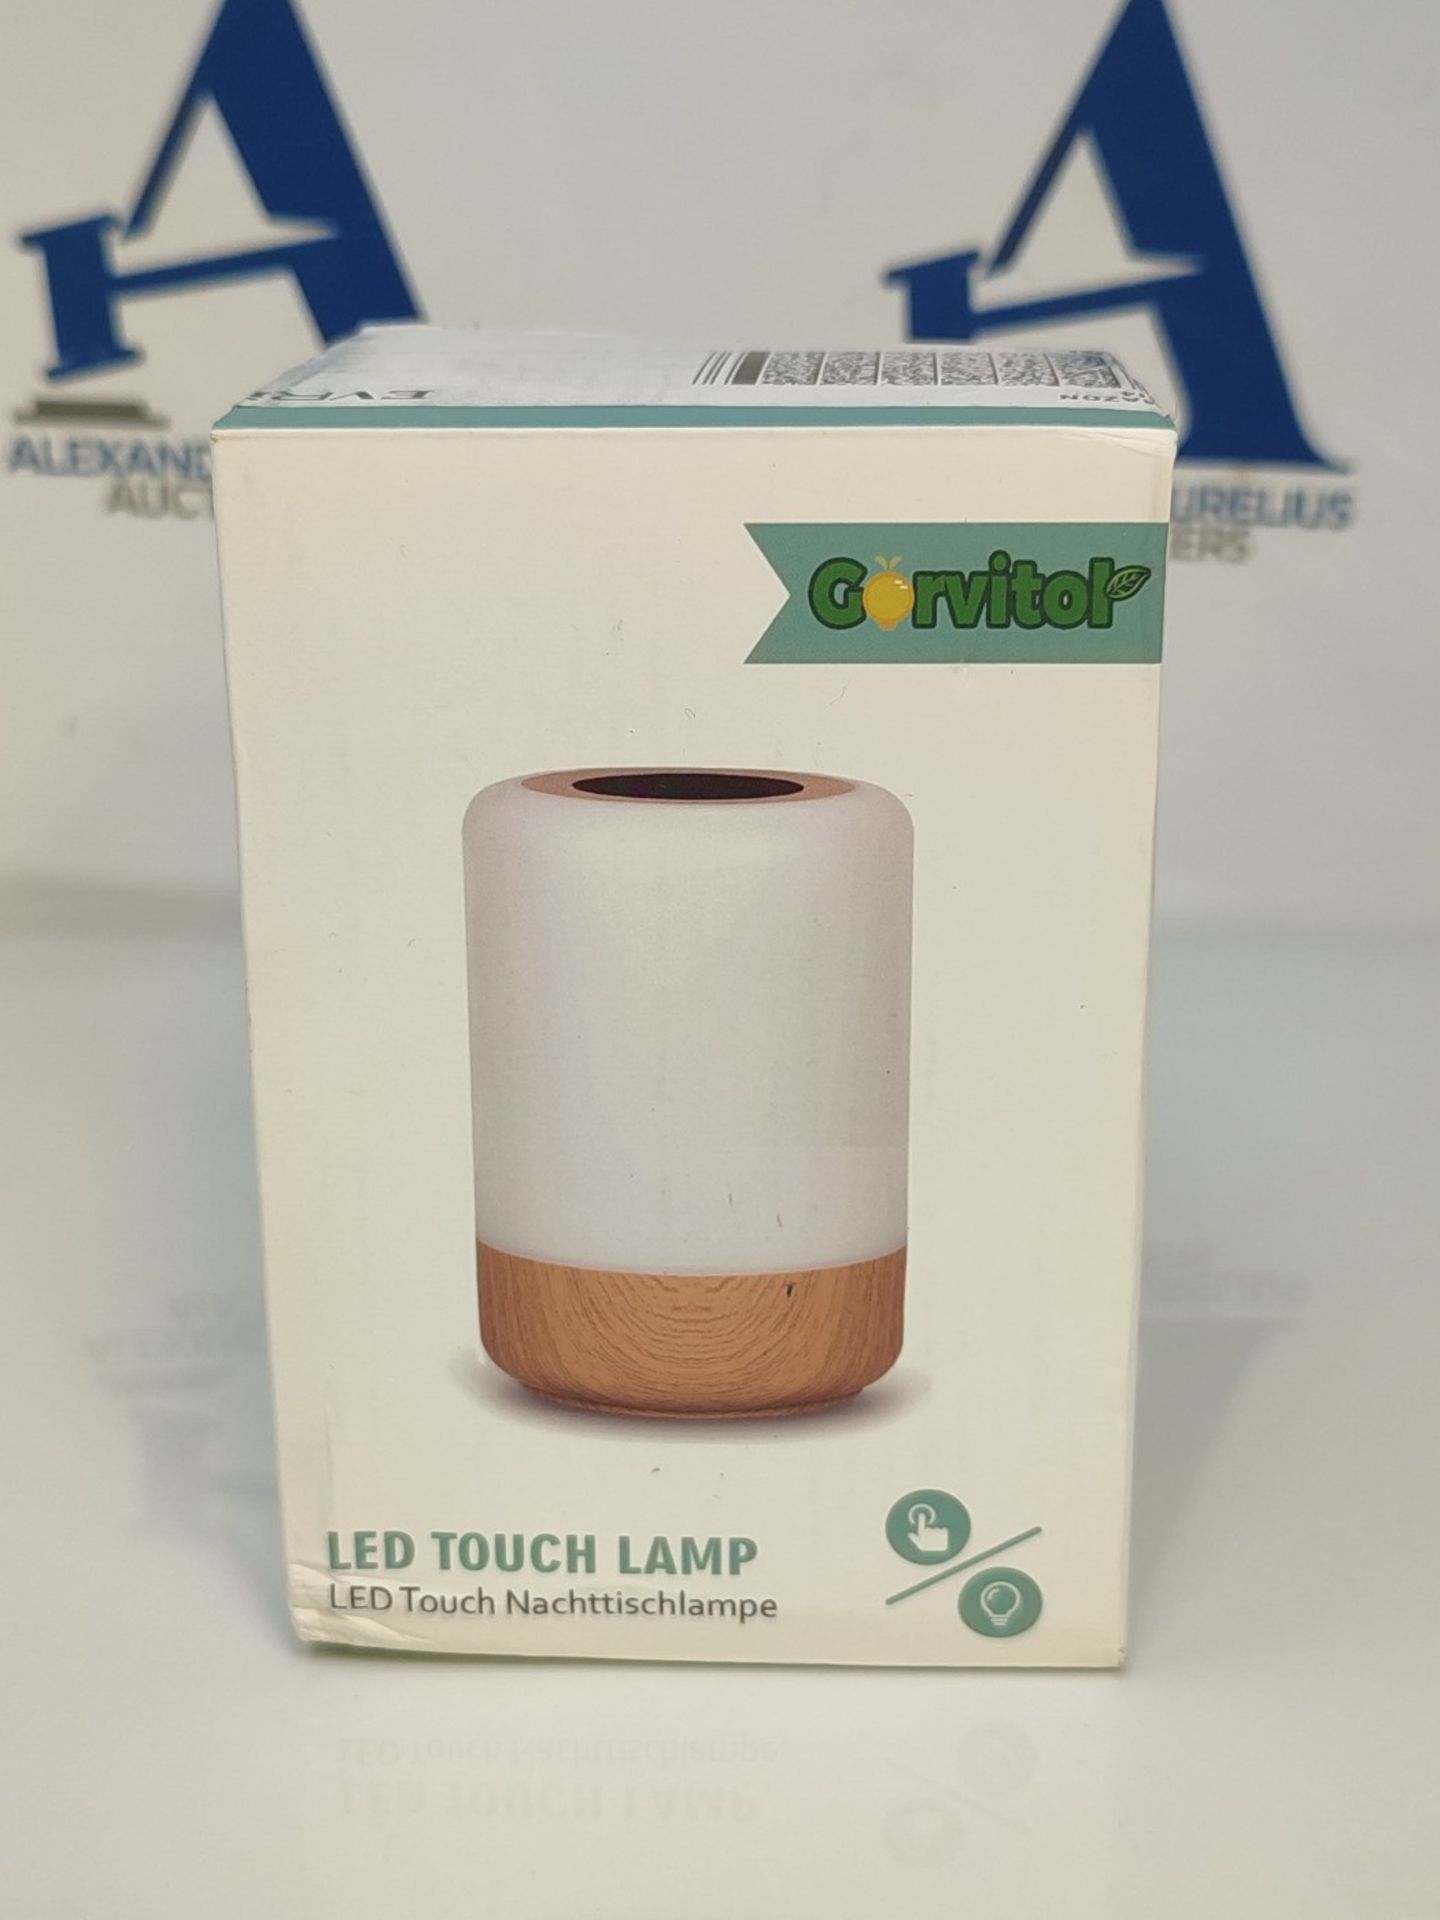 Gorvitor Dimmable Wireless Touch Lamps Bedside, Rechargeable Baby Night Light Batter